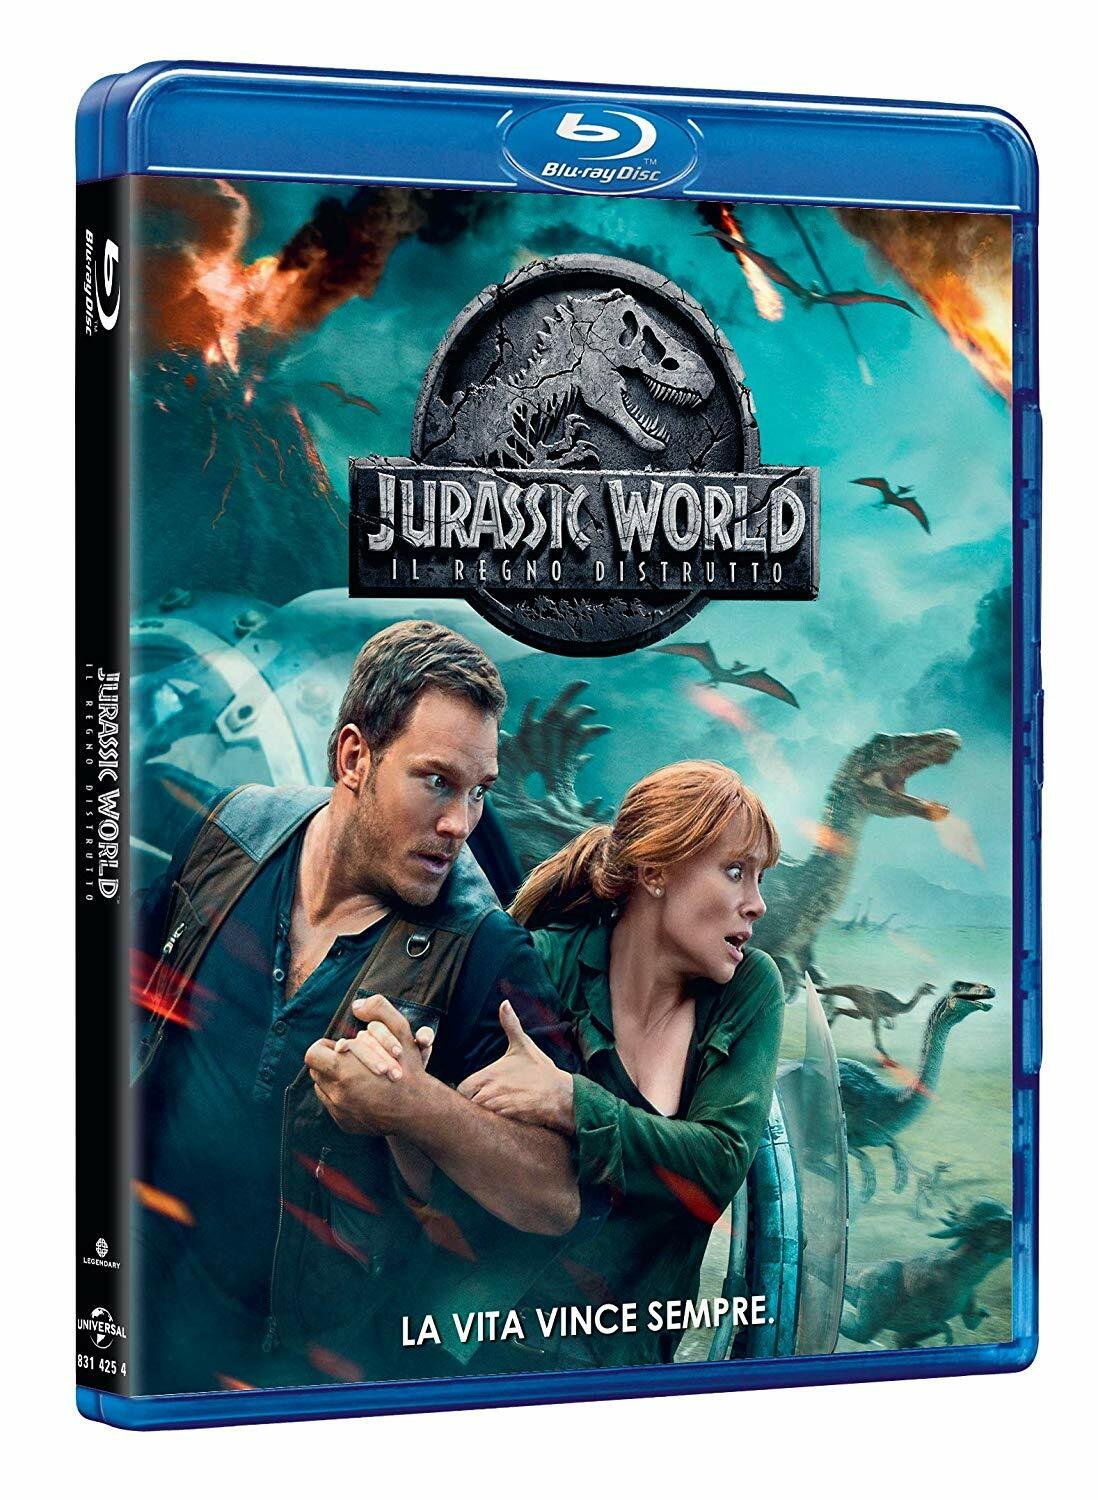 Il Blu-ray di Jurassic World: Il regno distrutto